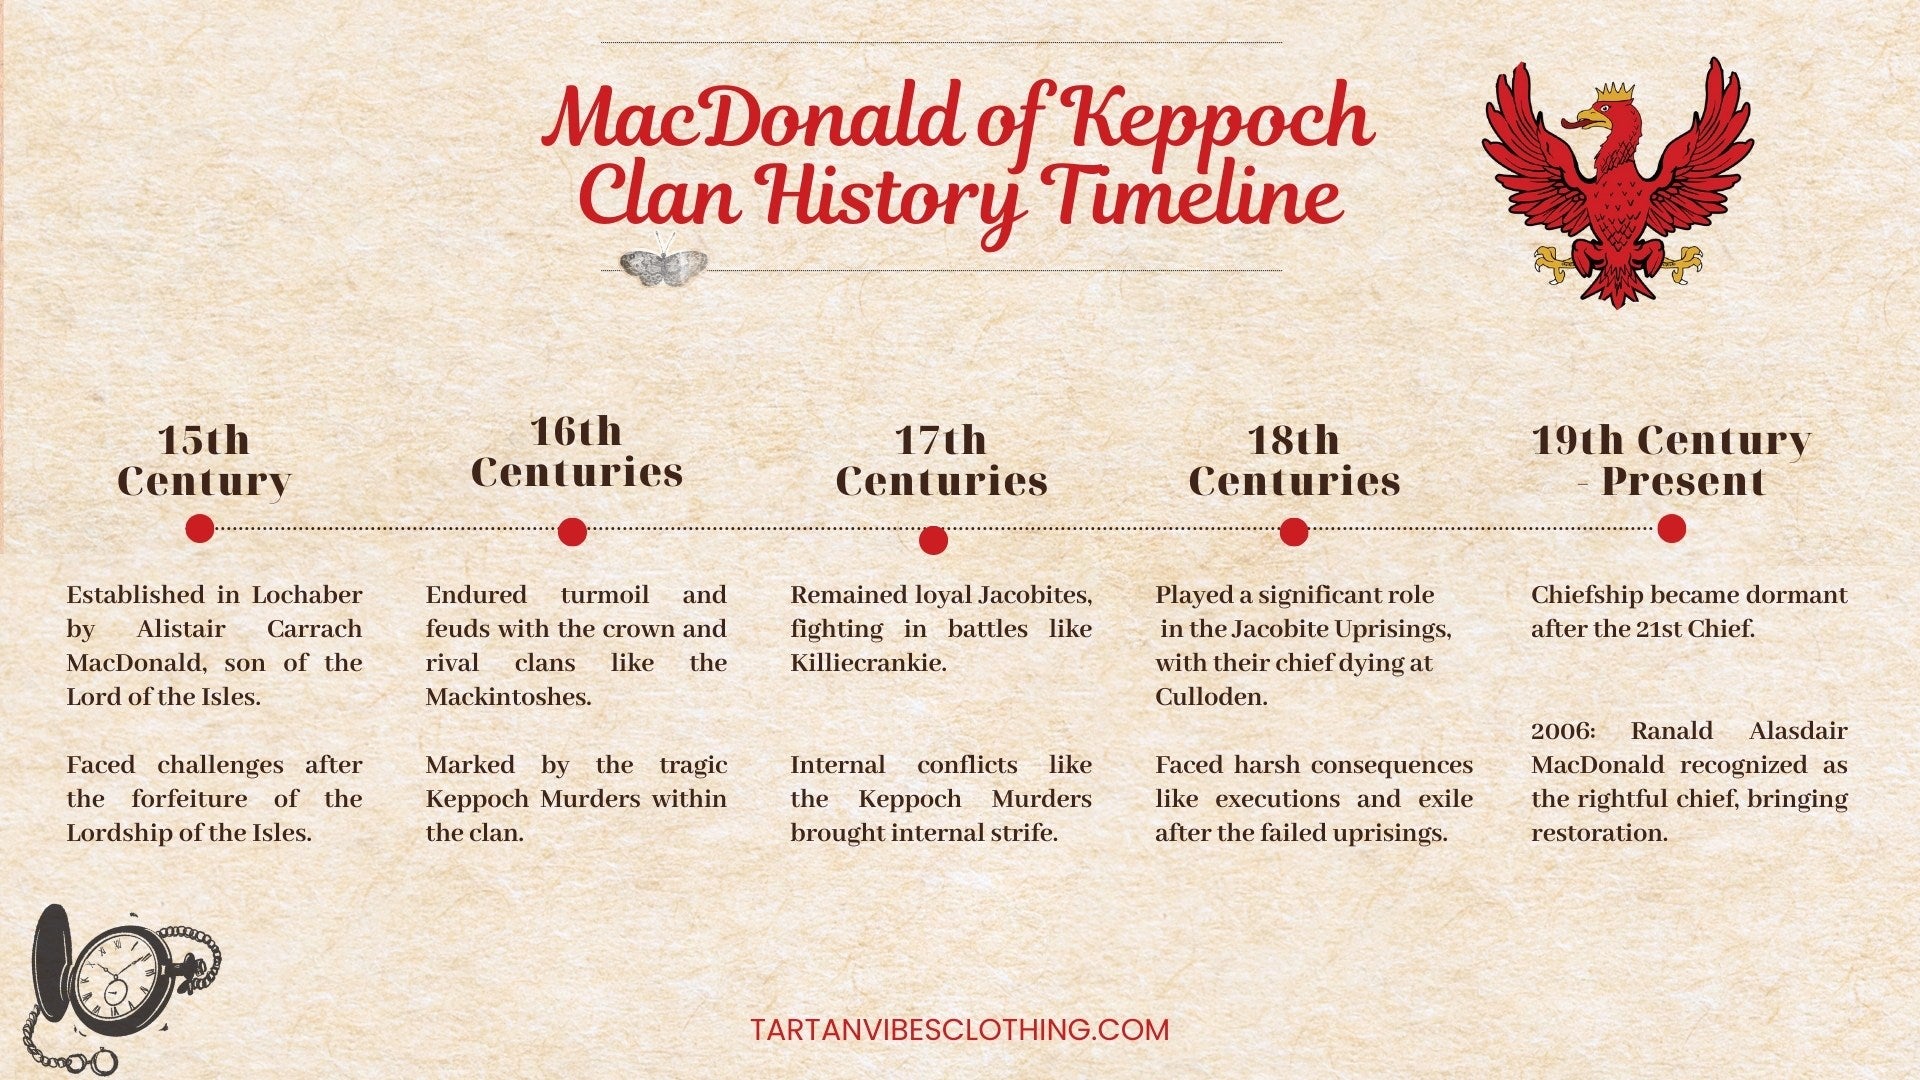 MacDonald of Keppoch Clan History Timeline